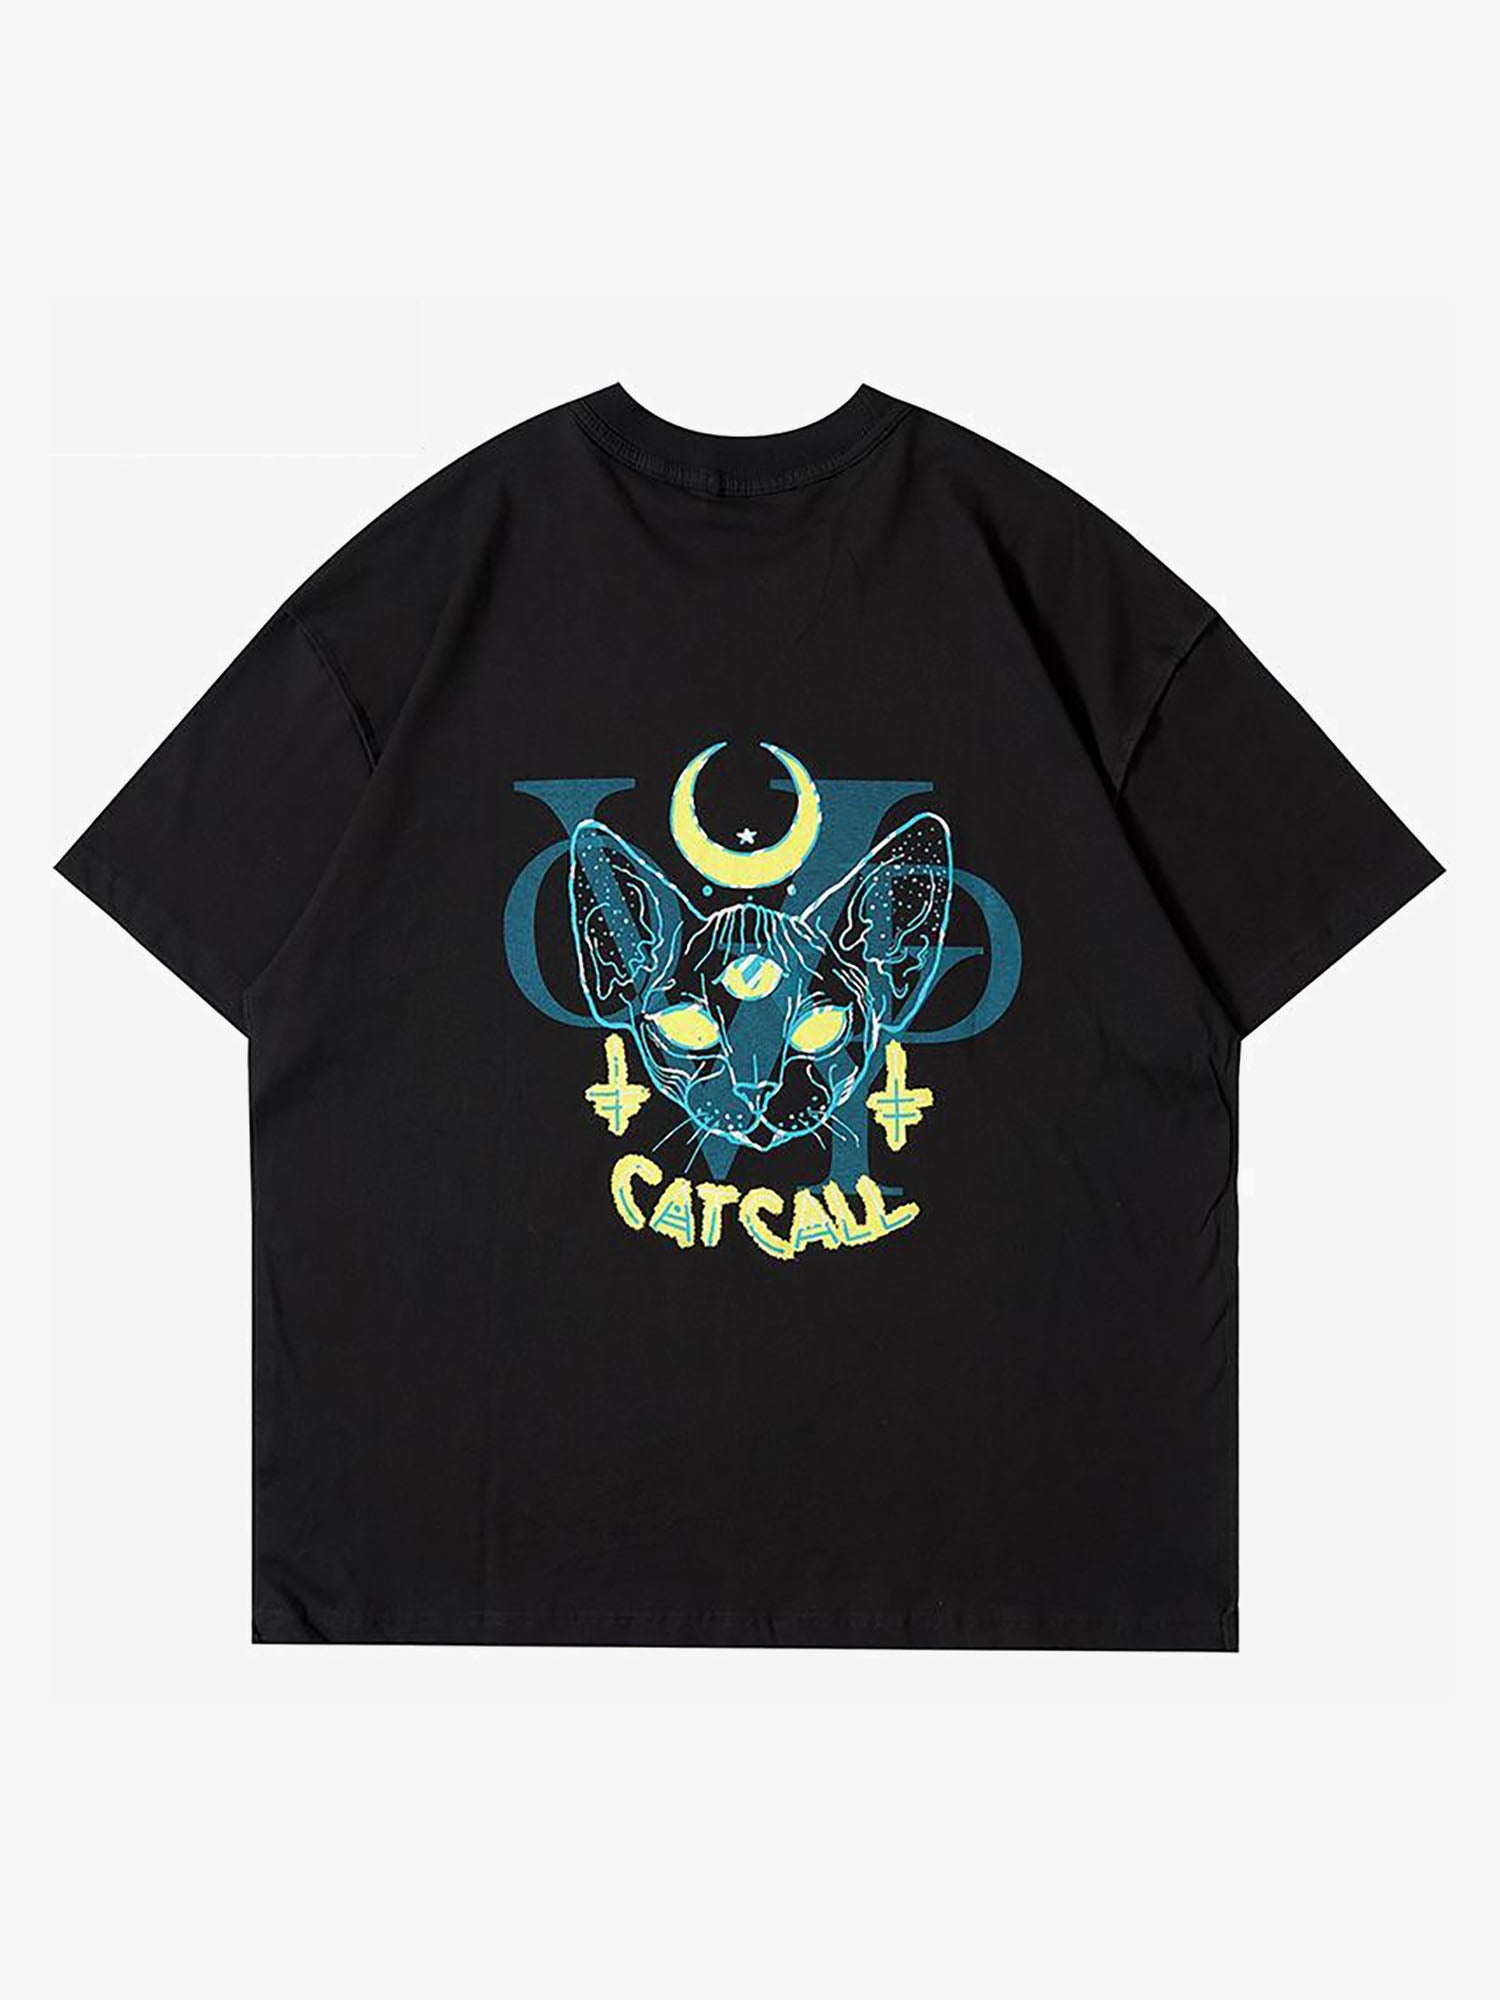 Justnotag T-shirt a maniche corte con testa di gatto con tre occhi dipinta a mano